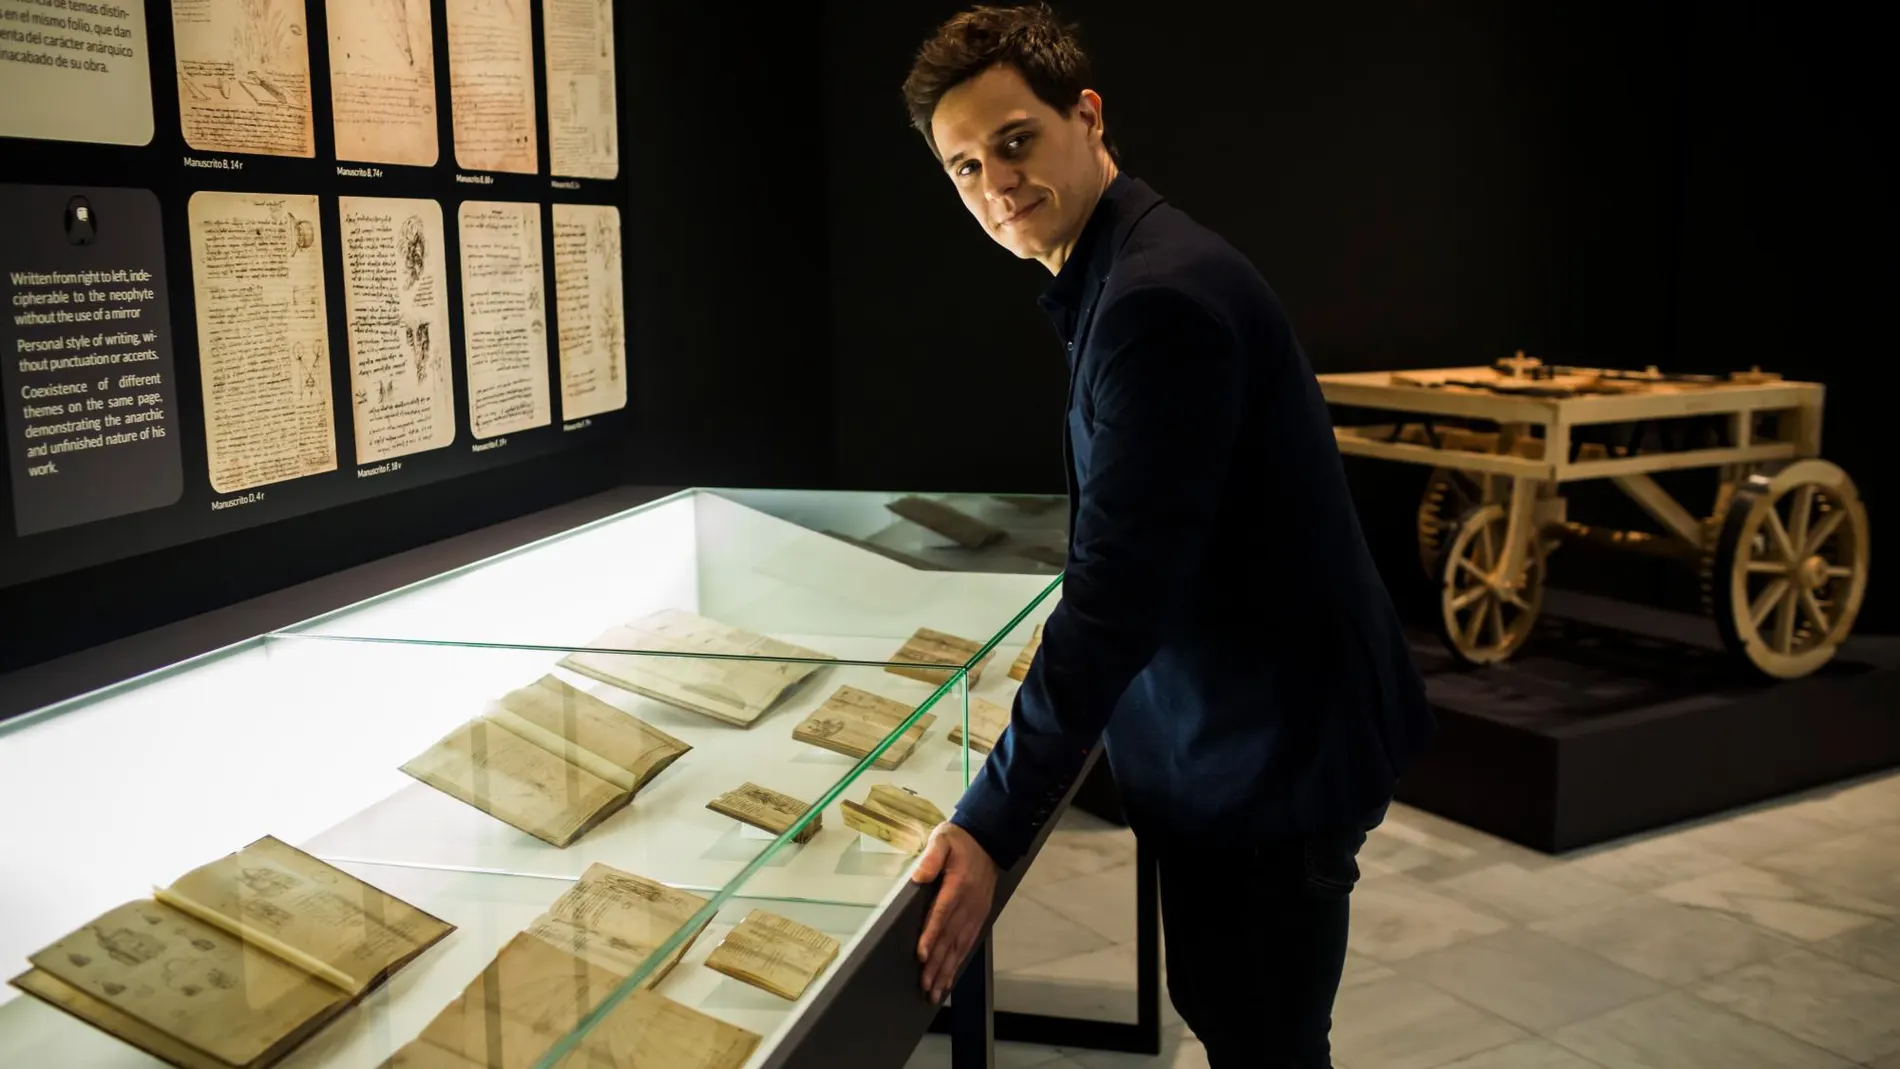 Madrid conmemora el quinto centenario del fallecimiento de Leonardo da Vinci, que se cumple en 2019, con una exposición única, comisariada por Christian Gálvez / Alberto R. Roldán / Diario La Razón